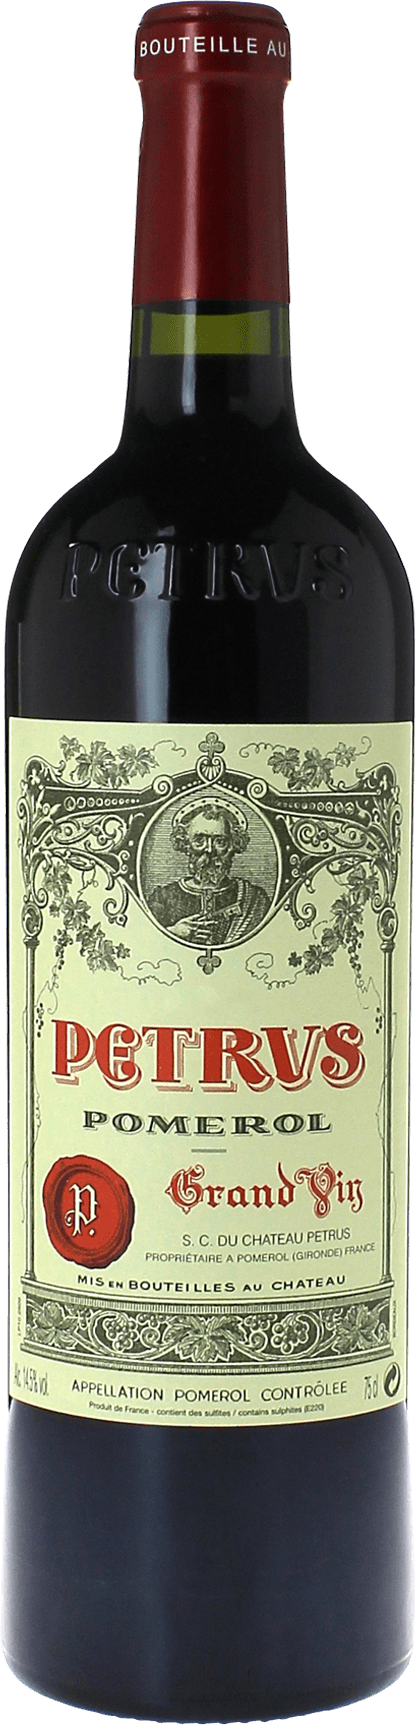 Petrus 2000  Pomerol, Bordeaux rouge